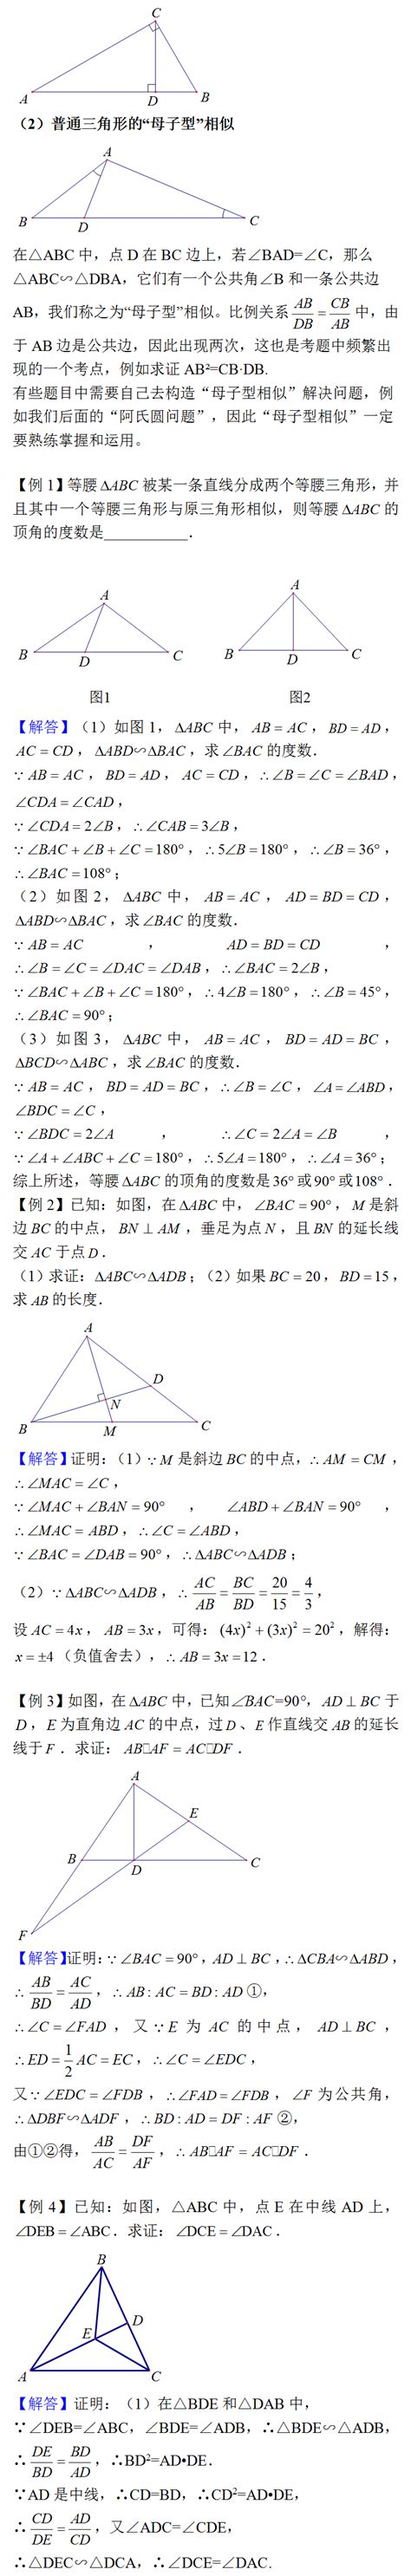 初中数学必考经典12个几何模型【合集精编】教案-教习网|教案下载